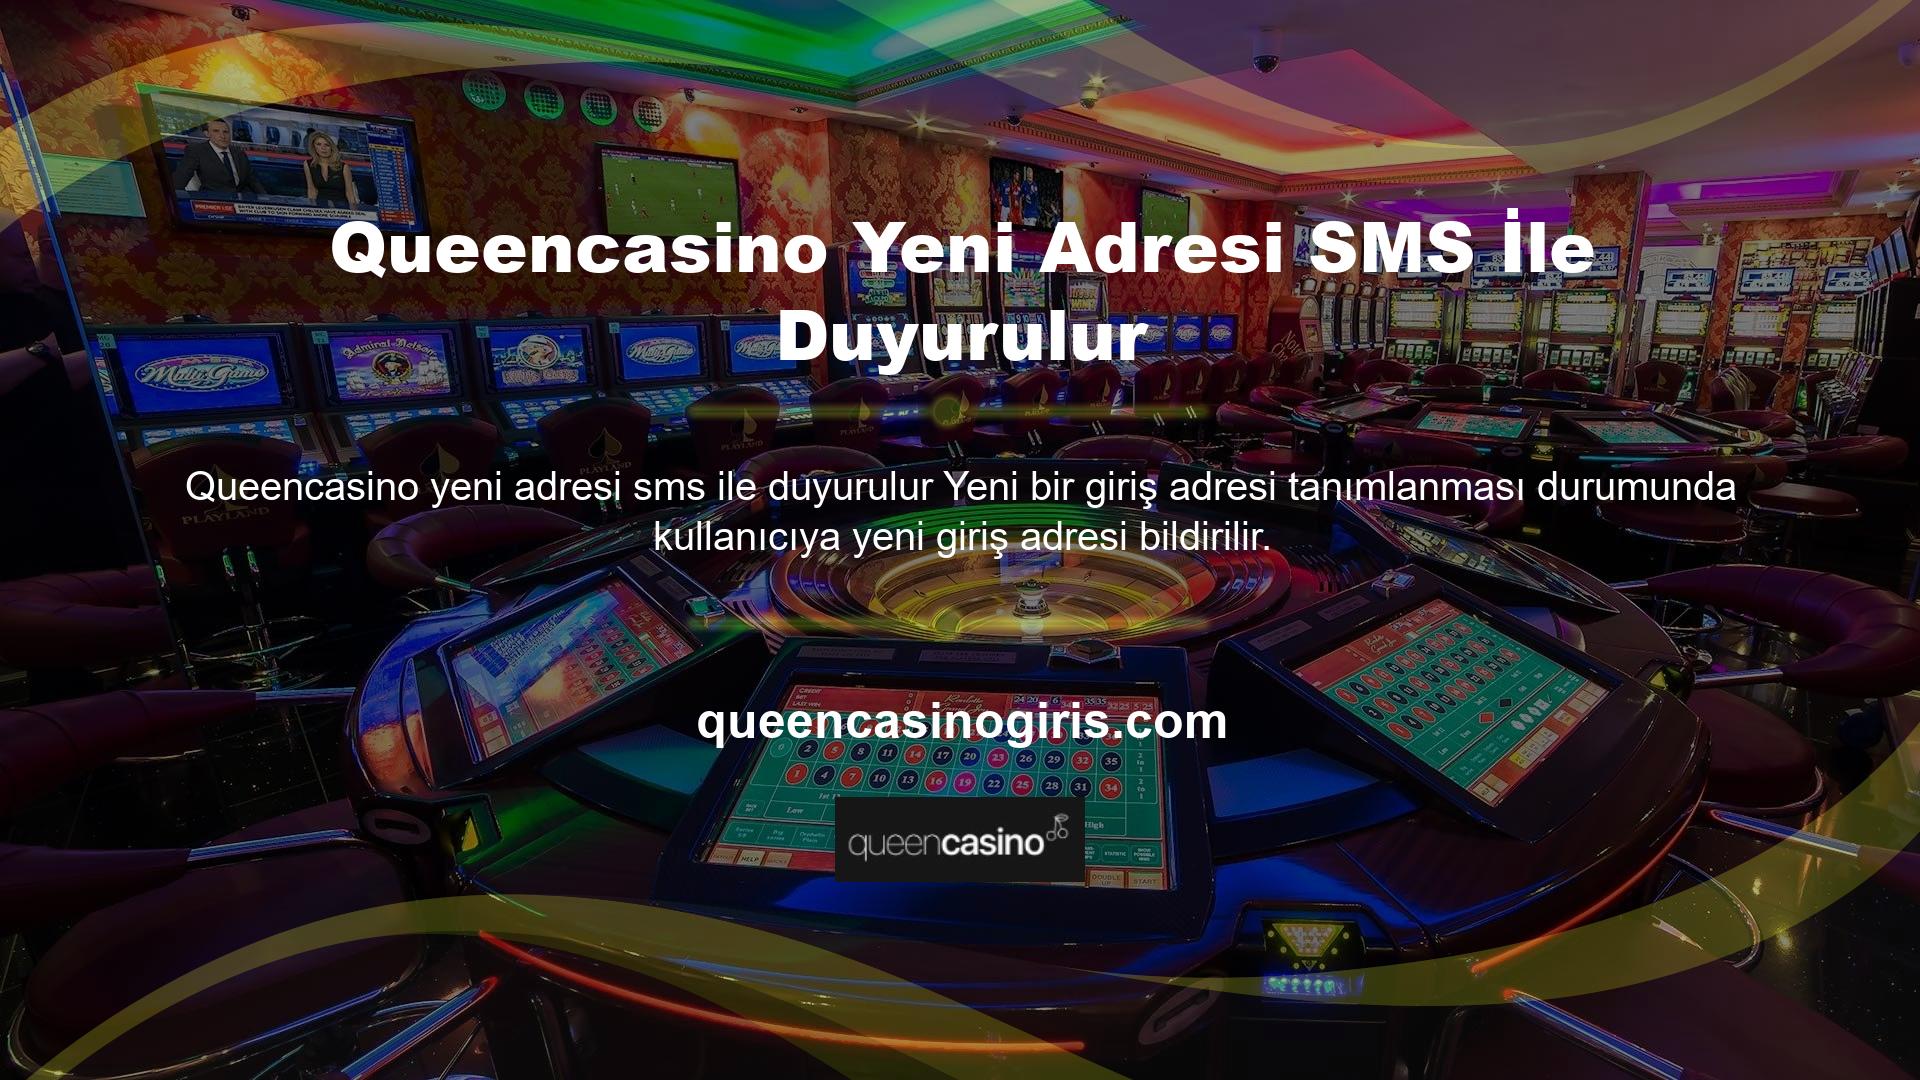 Queencasino yeni adresi SMS ile mi gönderildi Tüm kullanıcılar yeni giriş adresleri kayıtlı telefonlarından SMS ile bilgilendirilecek, ancak burada aşağıdaki kullanım durumu da ele alınmalıdır